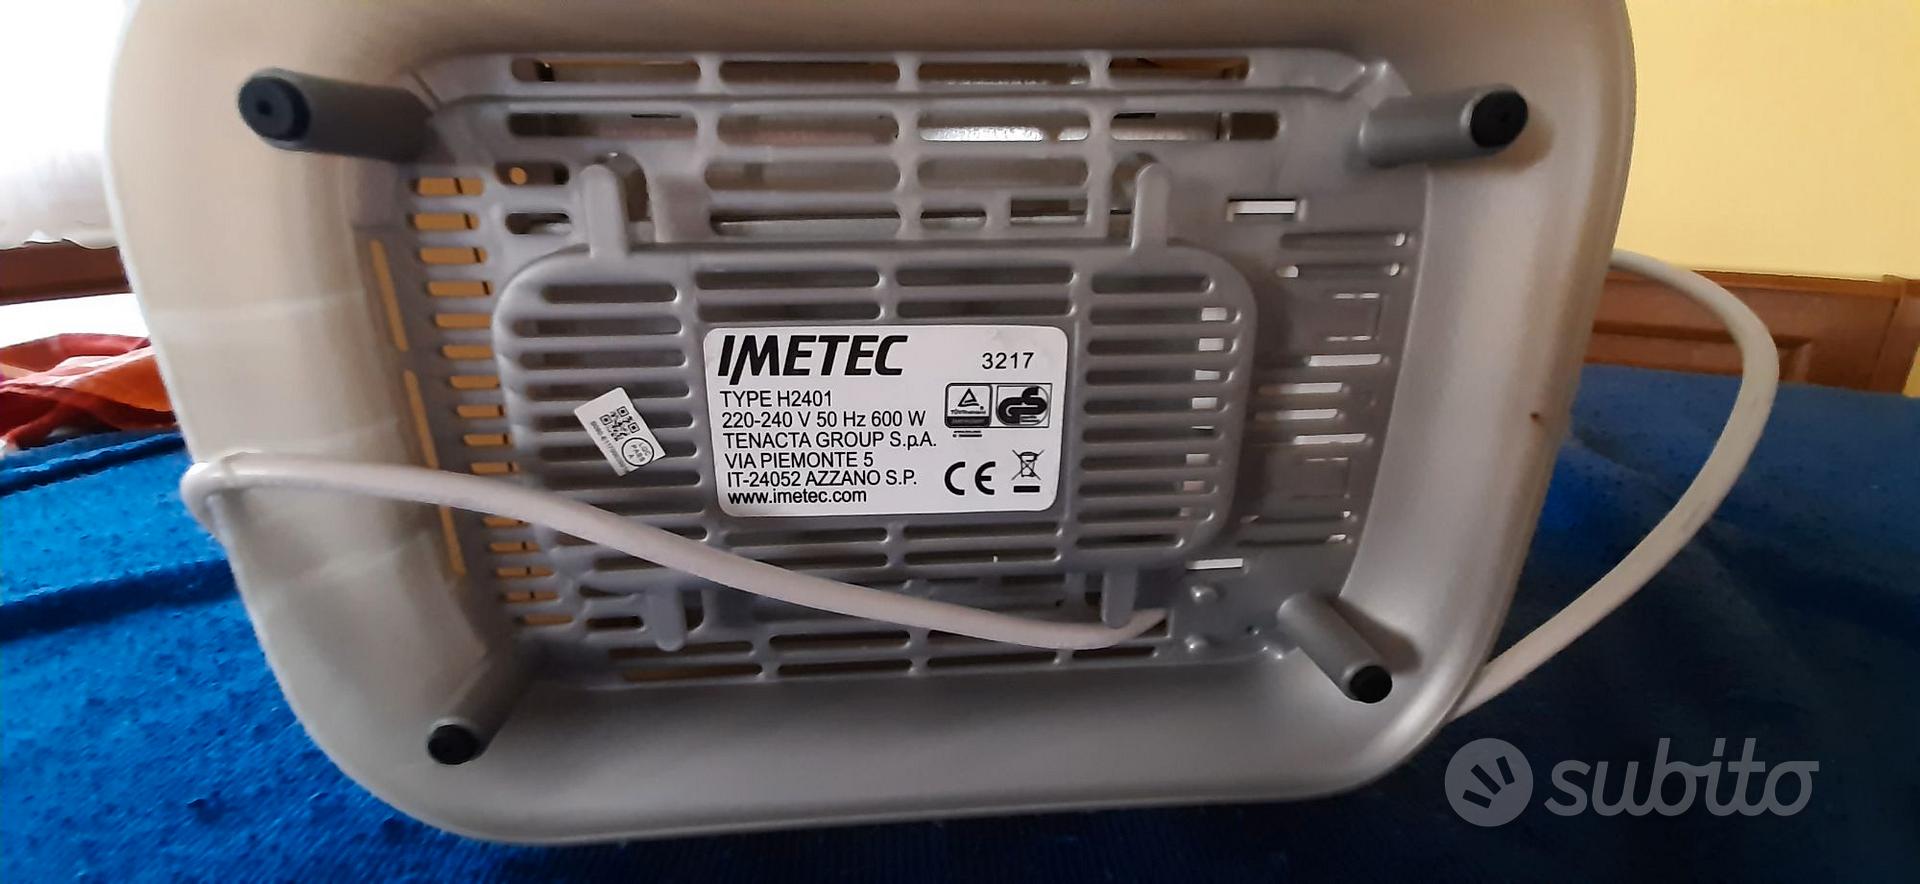 Tostapane Imetec Professional Serie - Elettrodomestici In vendita a Venezia